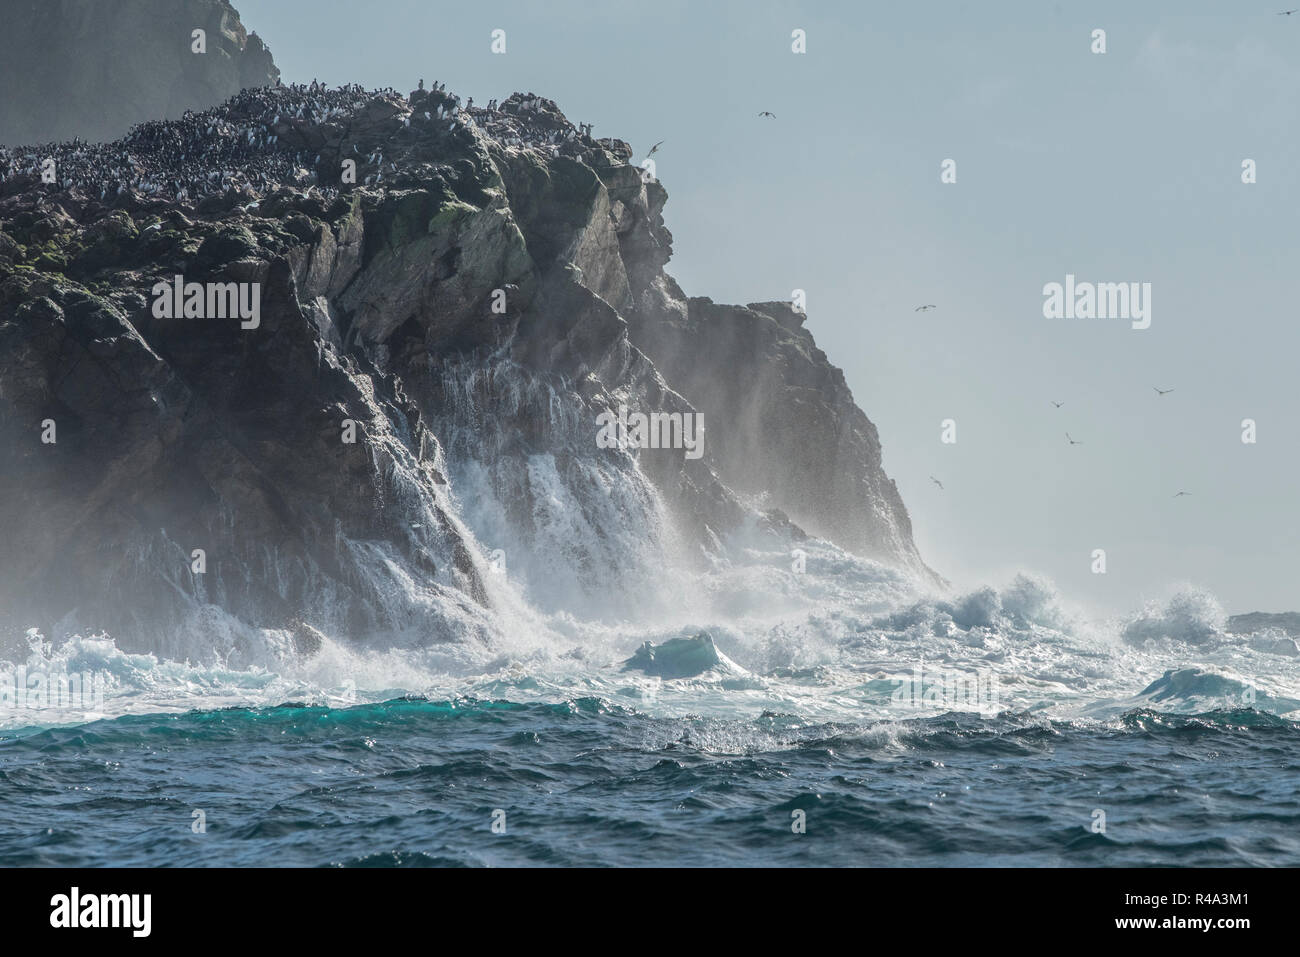 Les vagues s'écraser sur la rive de l'îles Farallon au large de la côte de Californie, les îles sont un lieu important de nidification pour les oiseaux pélagiques. Banque D'Images